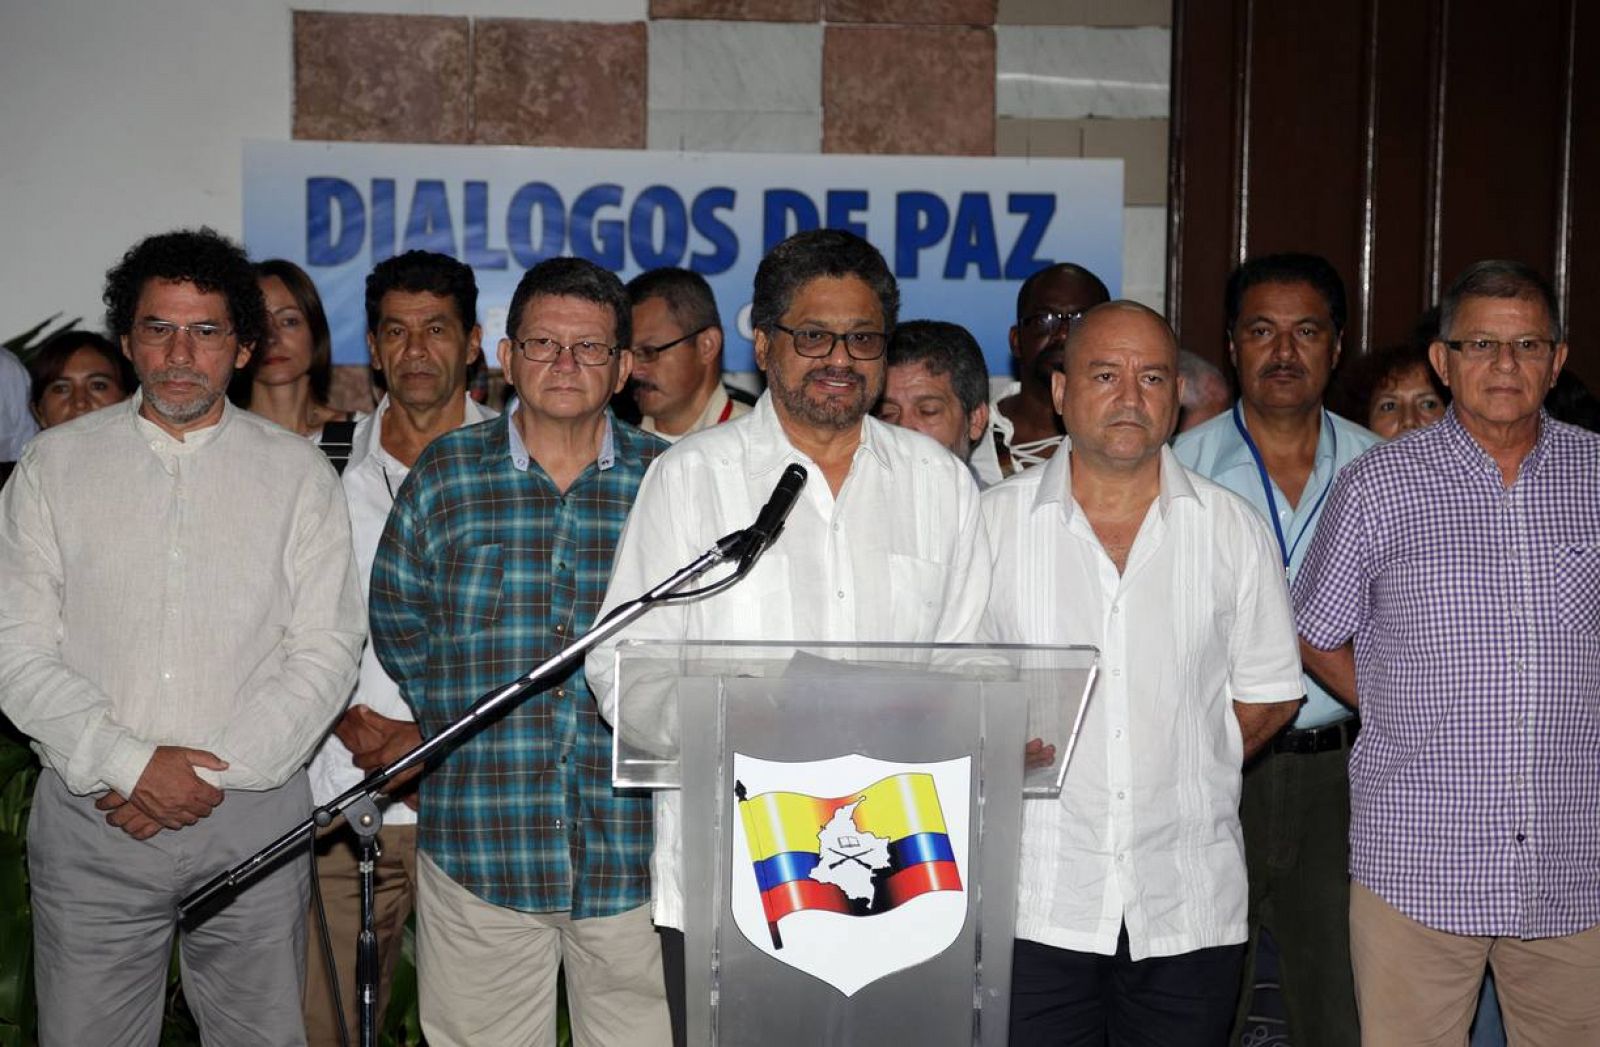  Las FARC anuncian un alto el fuego unilateral por un mes a partir del 20 de julio